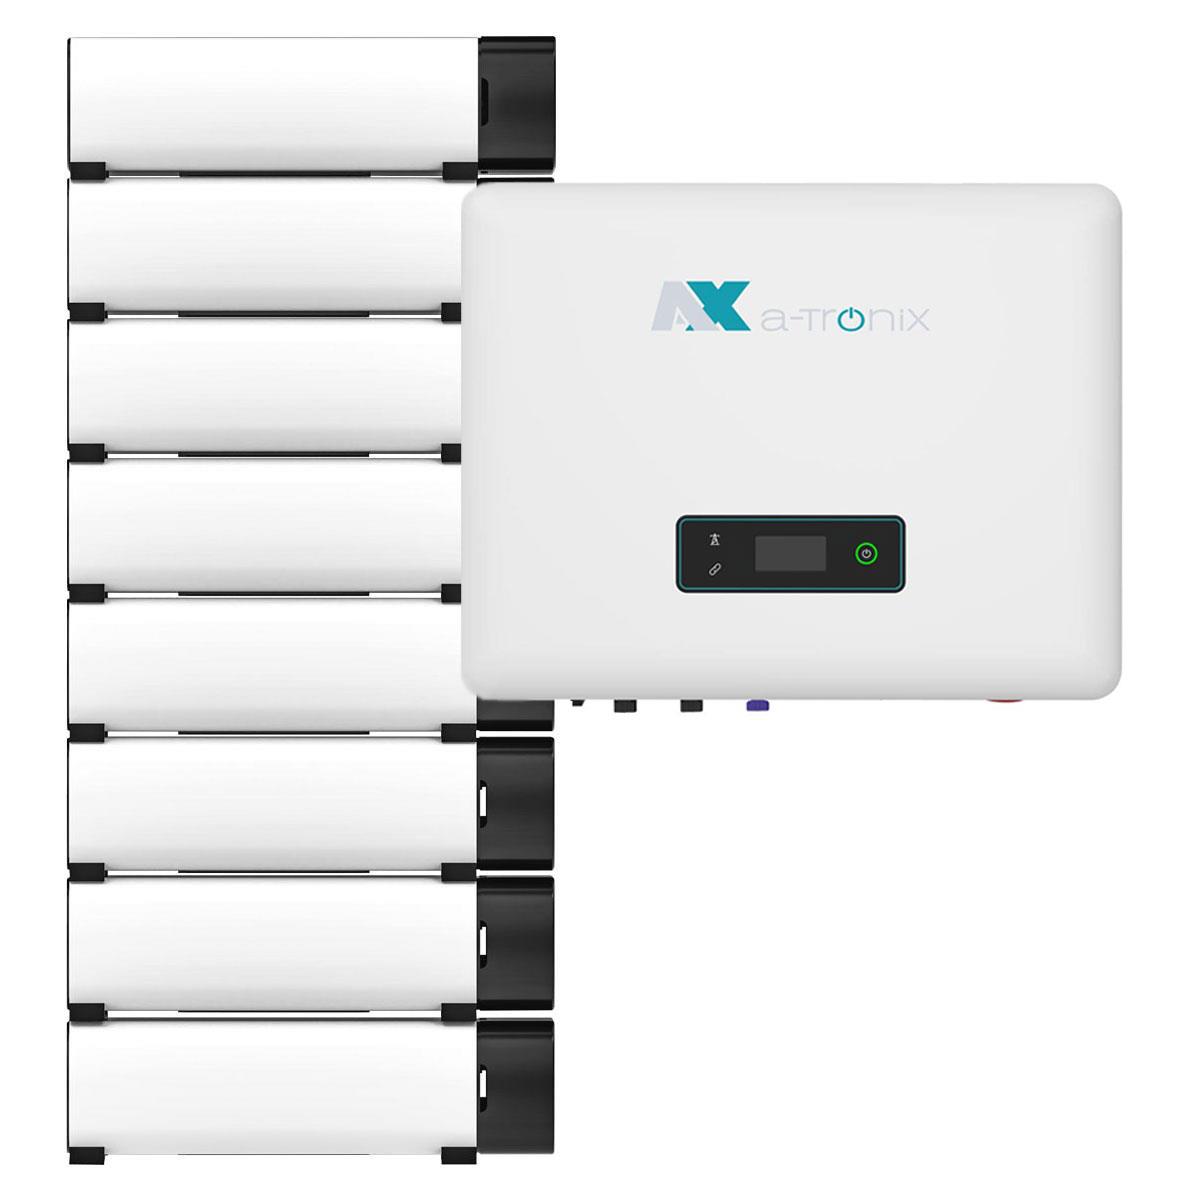 a-TroniX AX2 15kWp PV Komplettanlage mit Solarmodulen und 16,1kWh Speicher